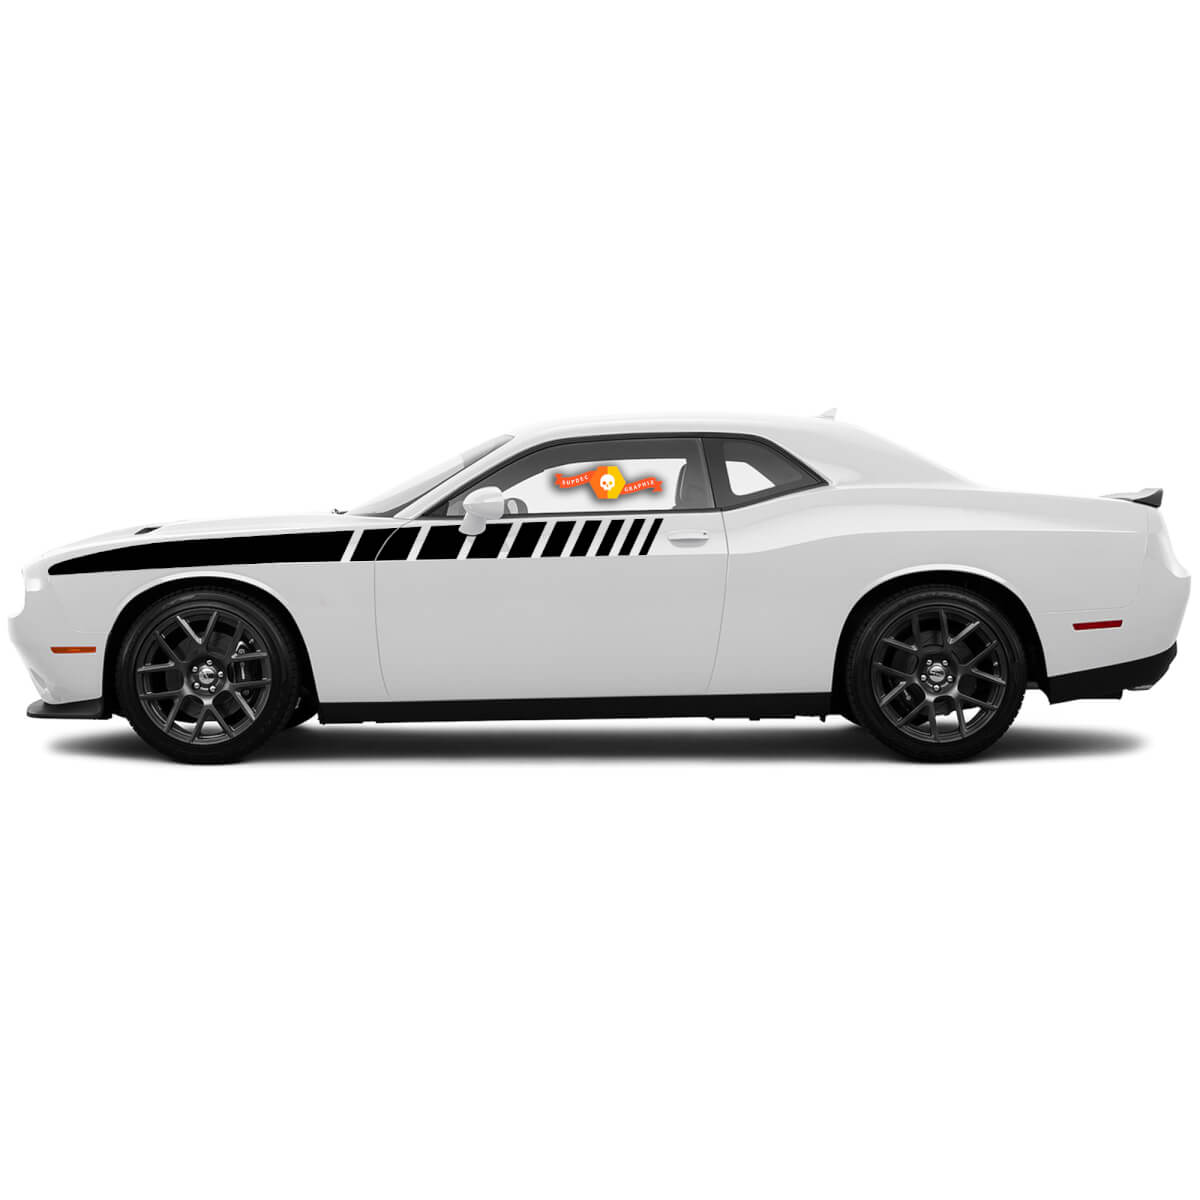 For 2008-2014 Dodge Challenger Half Length Strobe Side Stripes Racing Decals